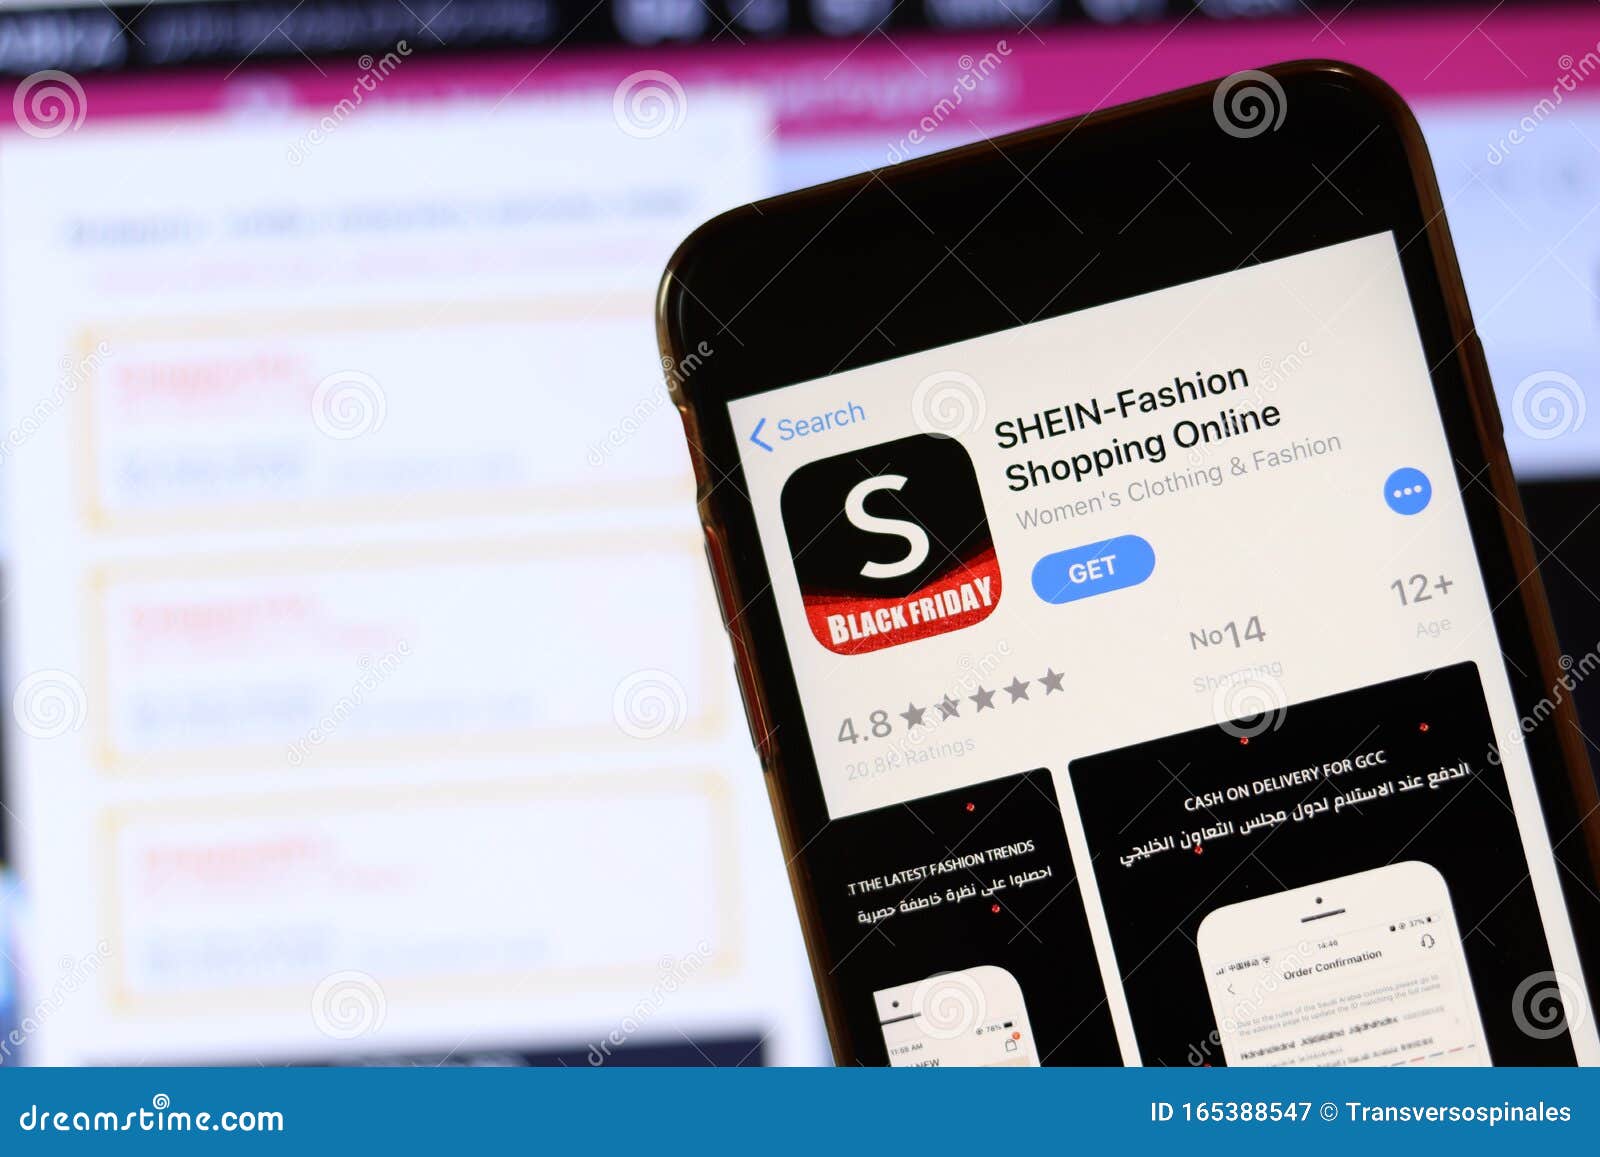 Shein tem política de frete diferente entre usuários de iOS e